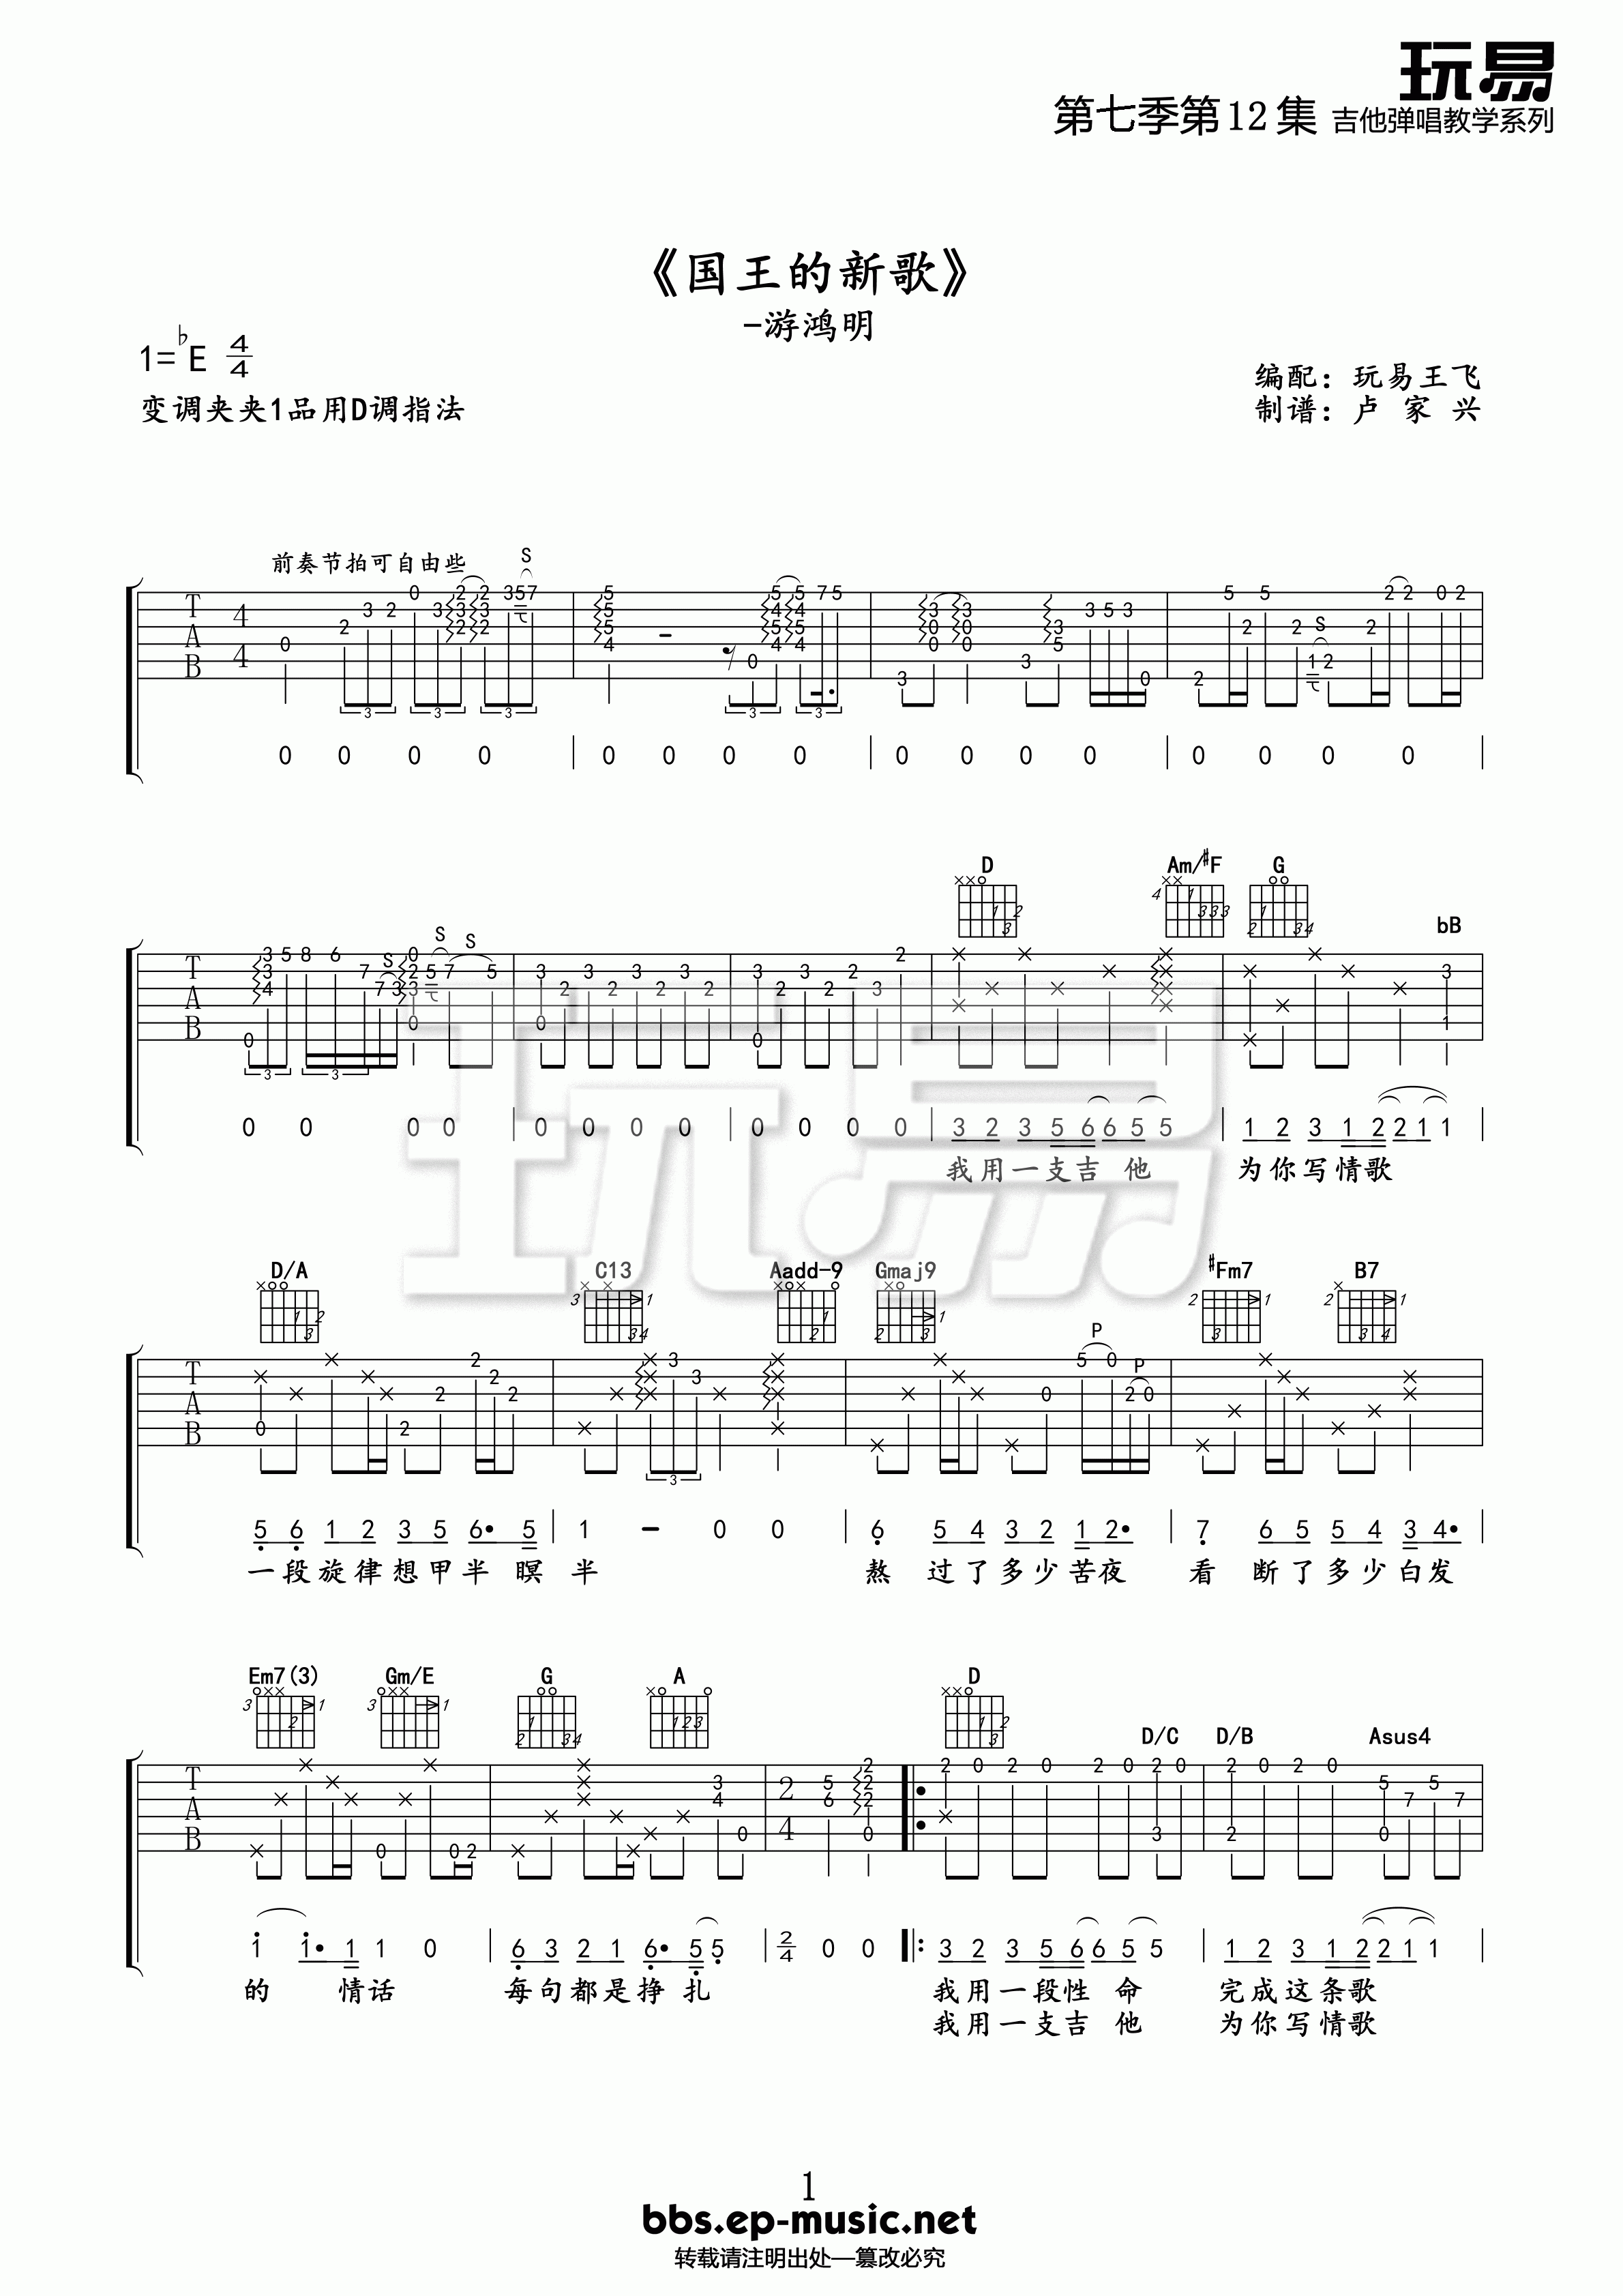 国王的新歌吉他谱 E调精选版-玩易吉他编配-游鸿明插图